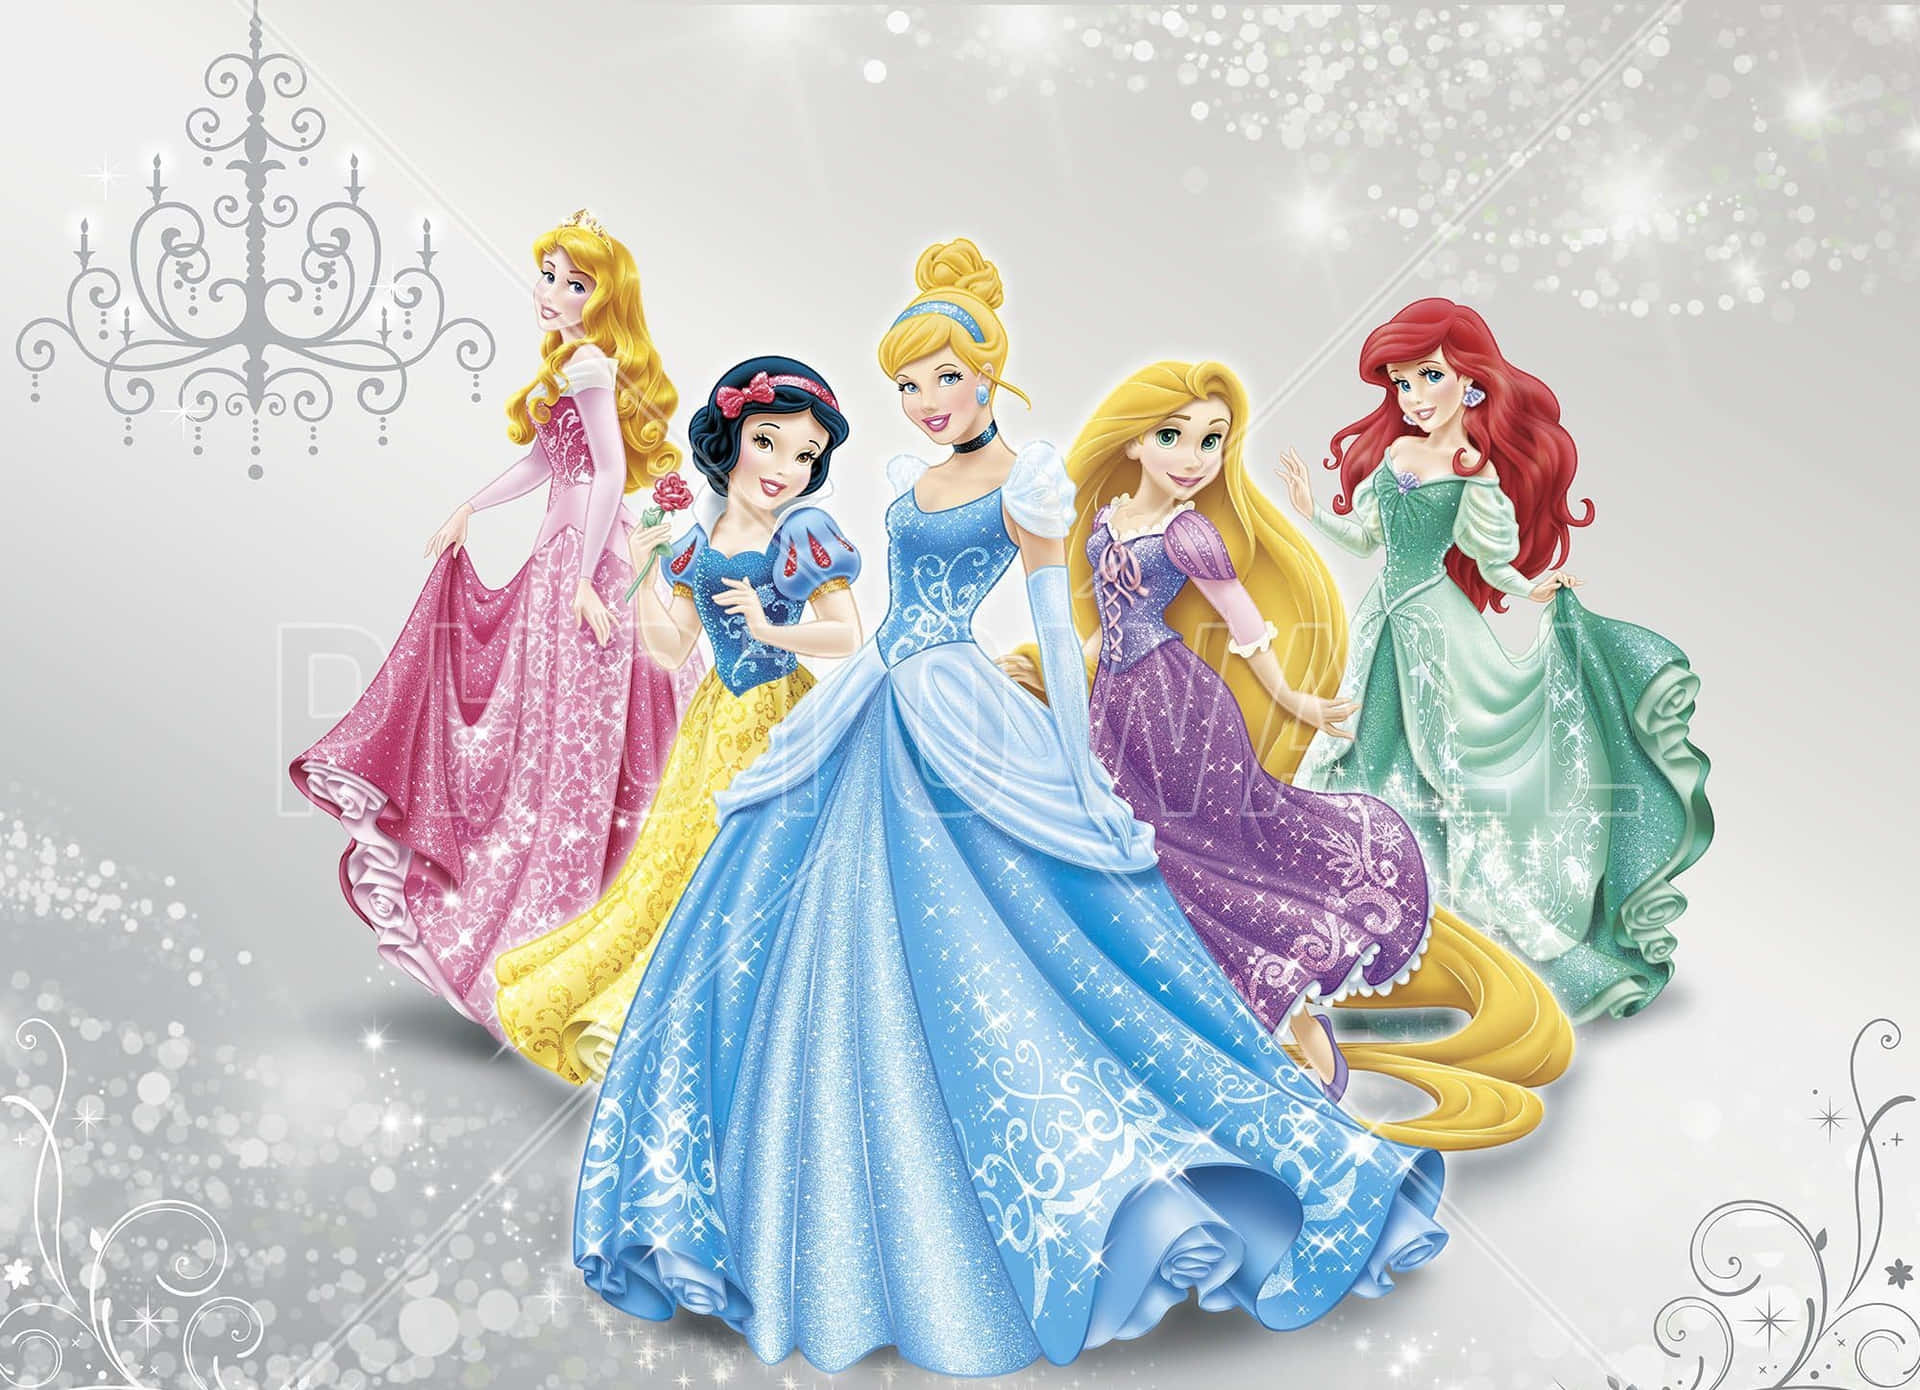 Imagende Chispas Y Brillos De Las Princesas De Disney